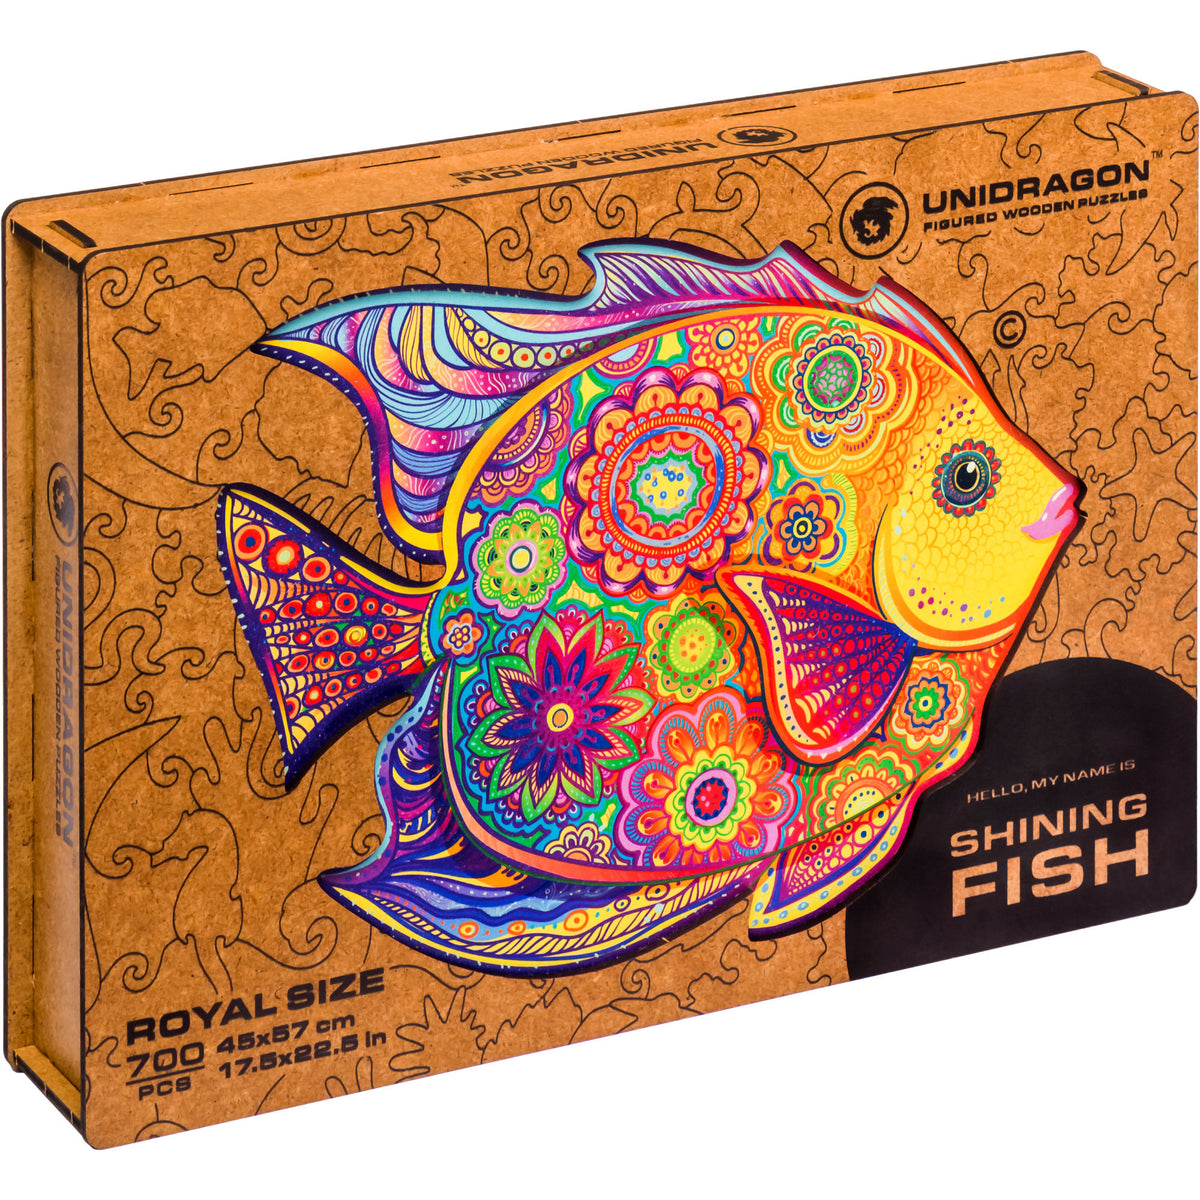 SHINING FISH – The Joy Box